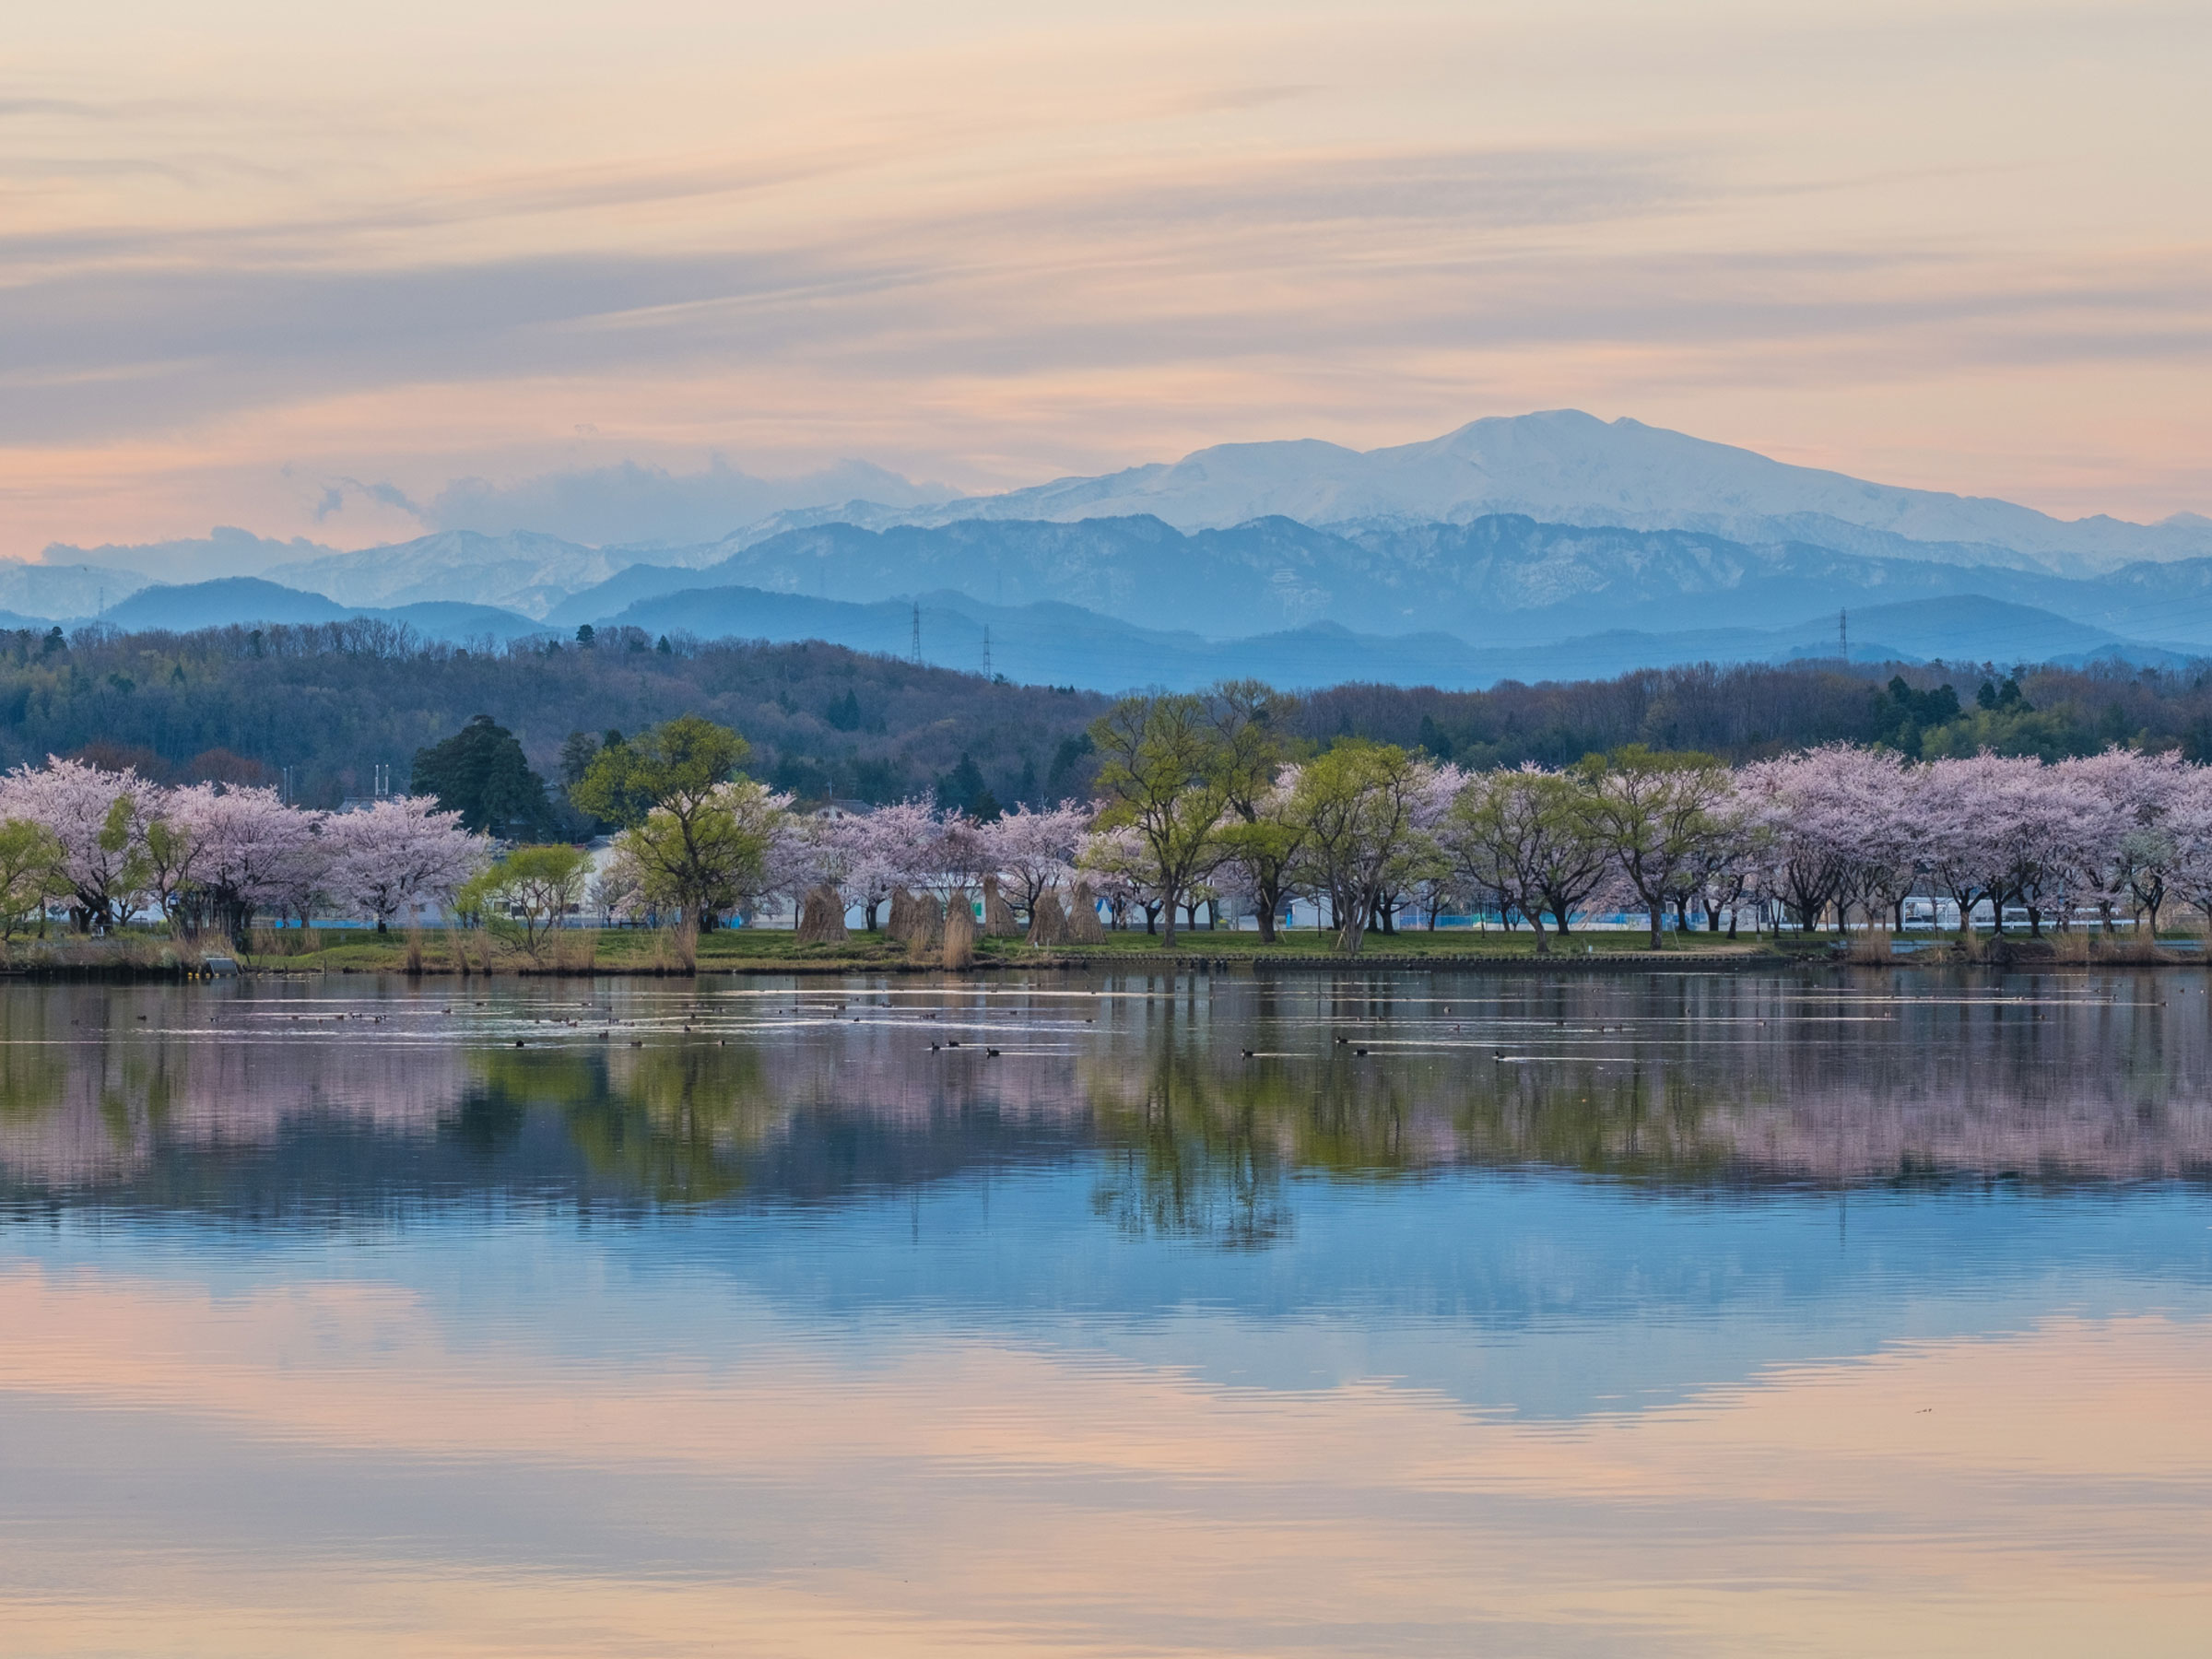 【石川県】春の絶景・風物詩4選 湖に桜並木と山が映り込む耽美な風景